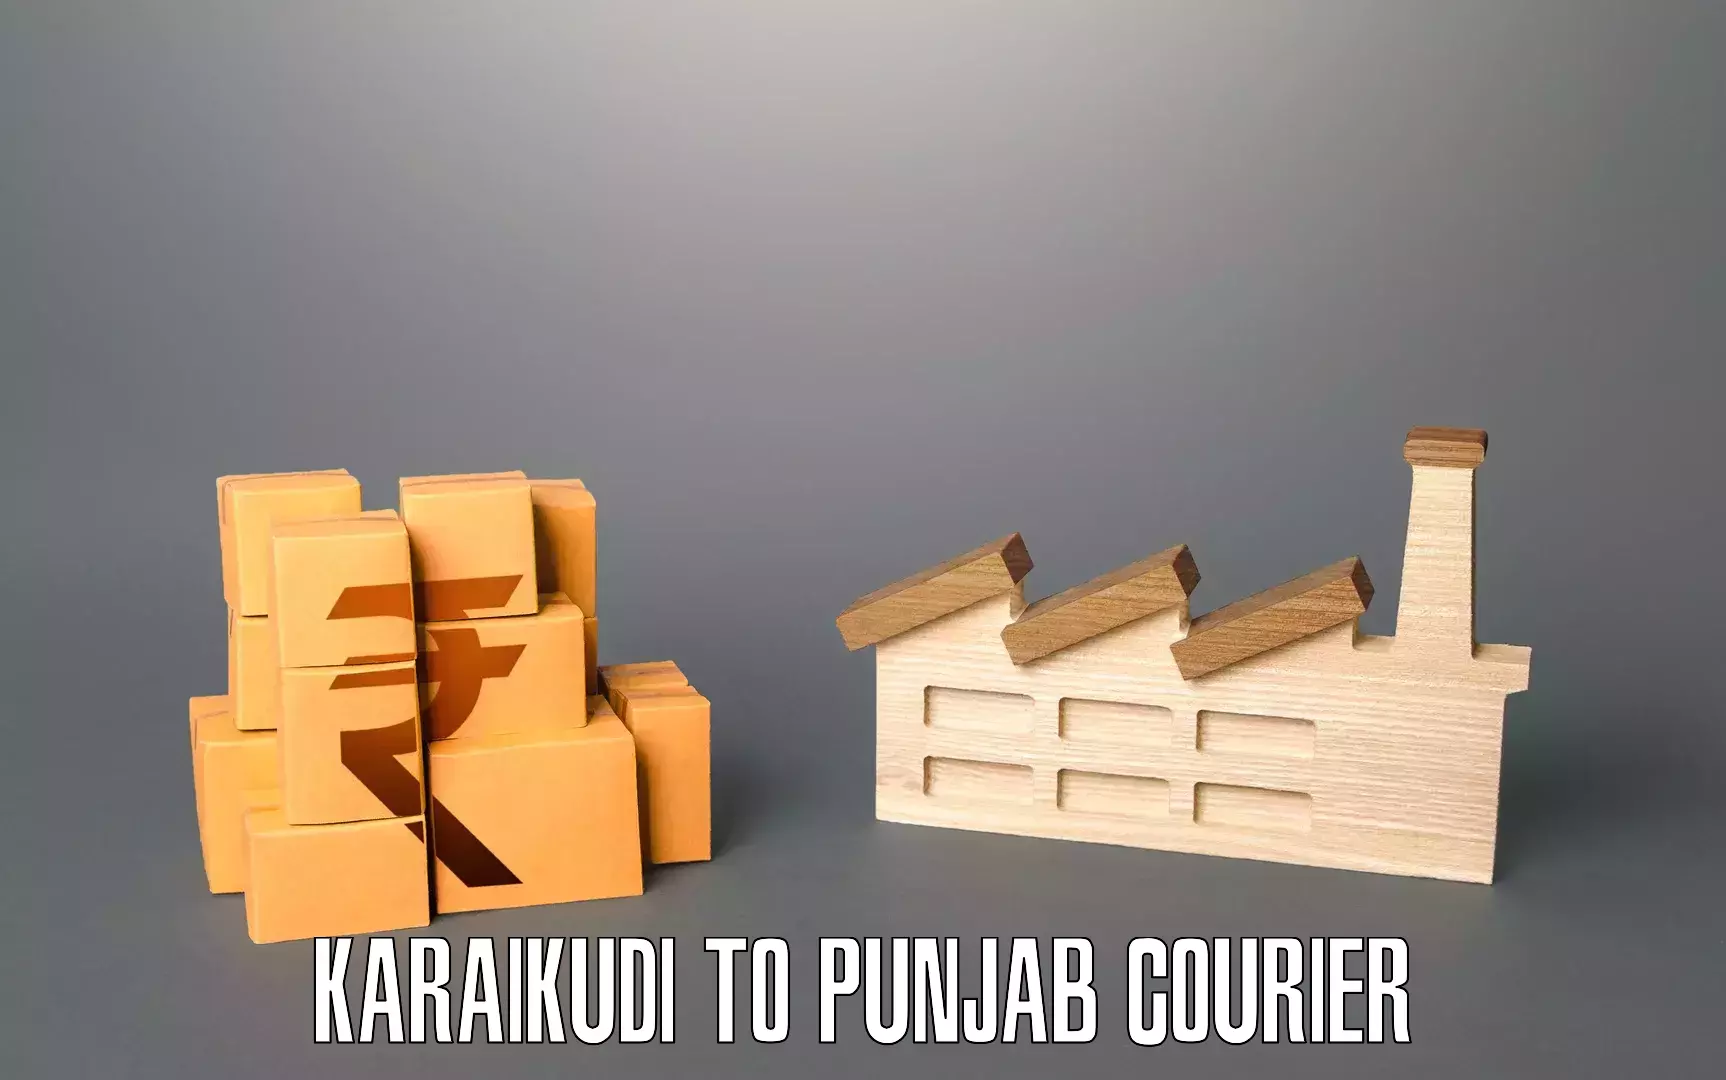 Dependable moving services Karaikudi to Punjab